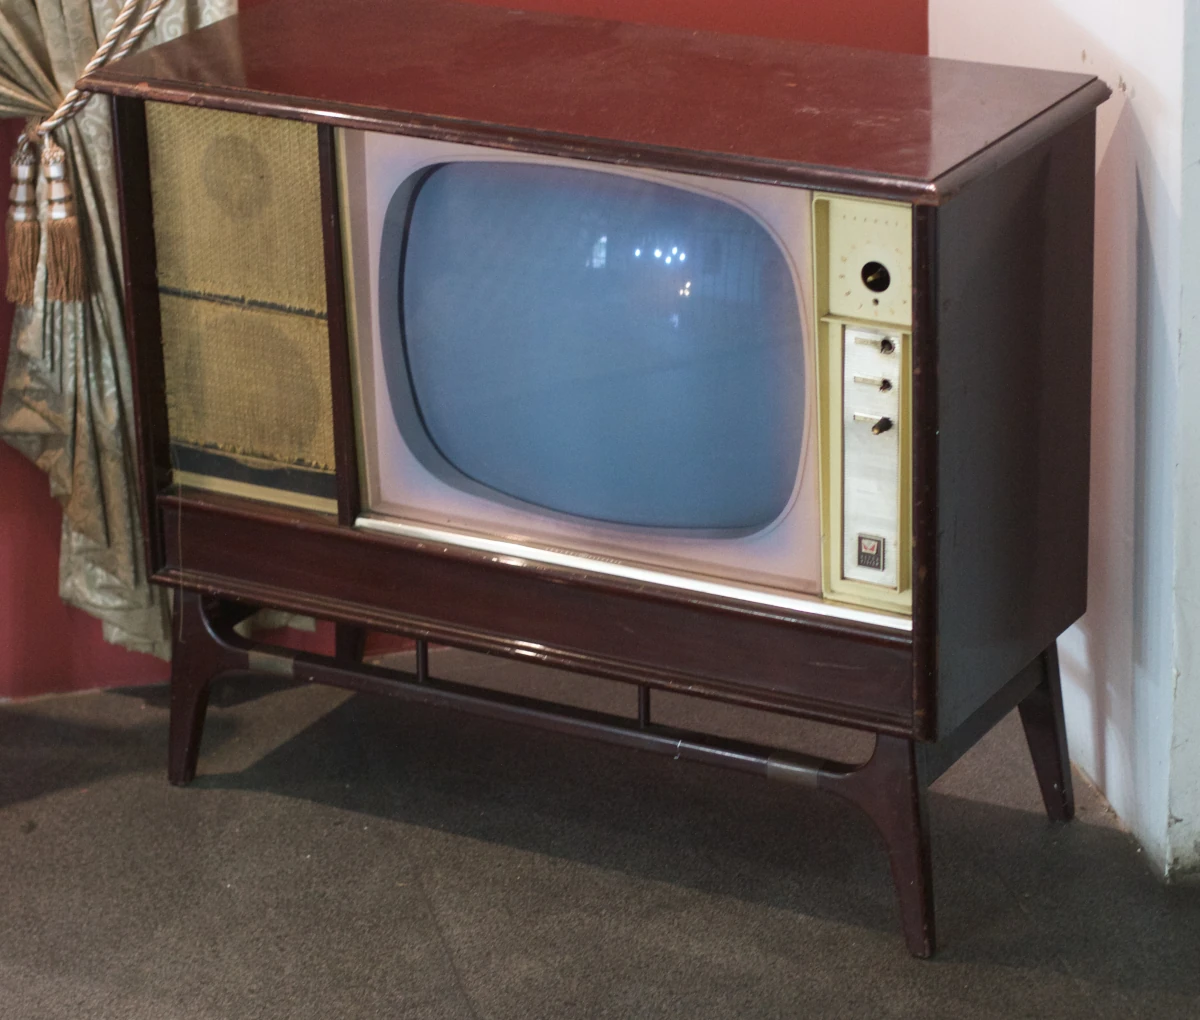 A vintage "box" TV. Or as we used to call it, a TV.